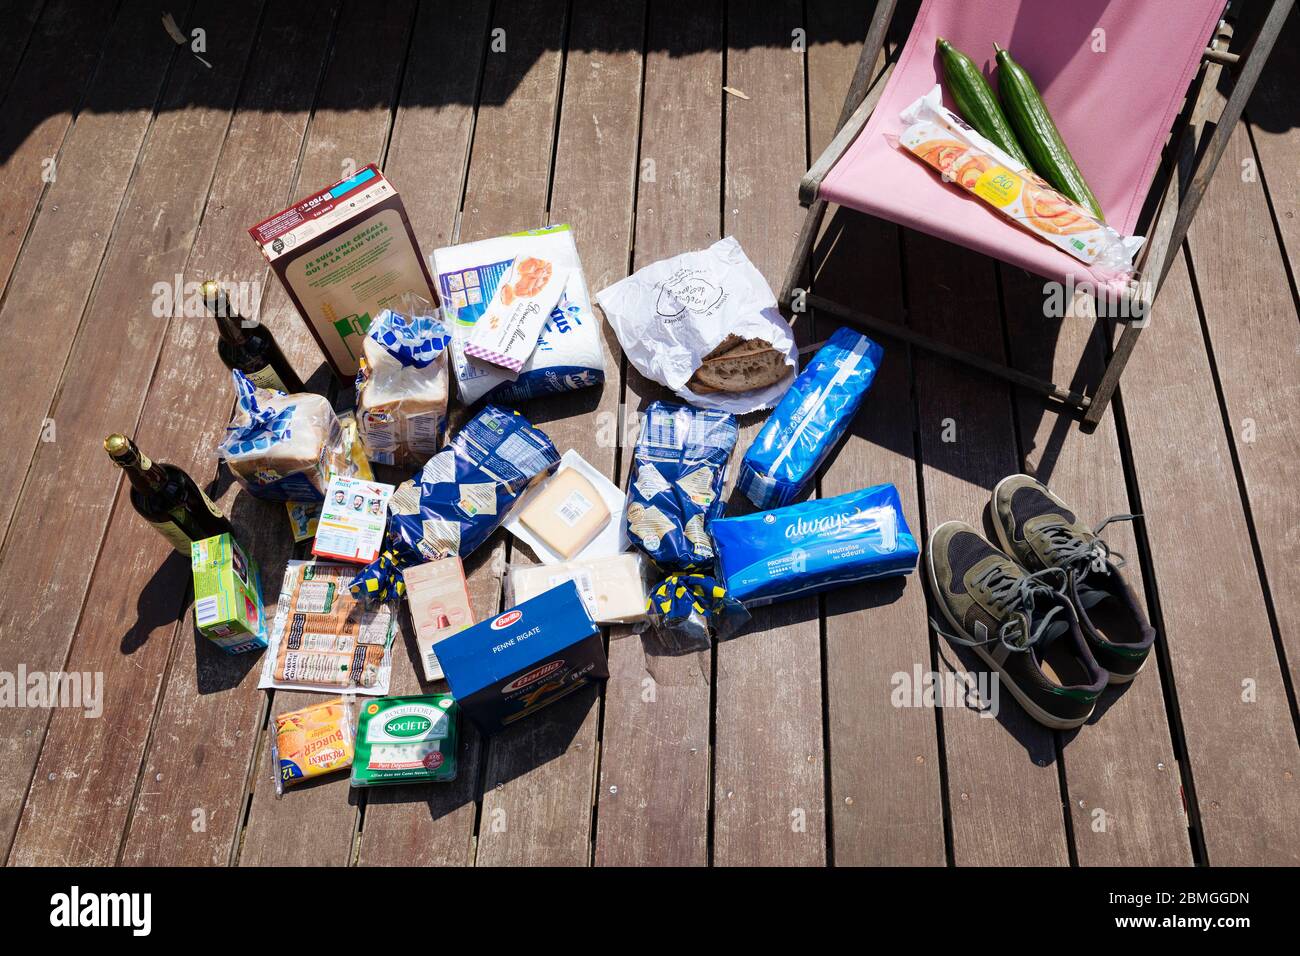 Illustrazione, shopping di alimentari, prodotti e loro imballaggi sono lasciati fuori al sole, su una terrazza. Secondo alcuni studi, il sole e calore co Foto Stock